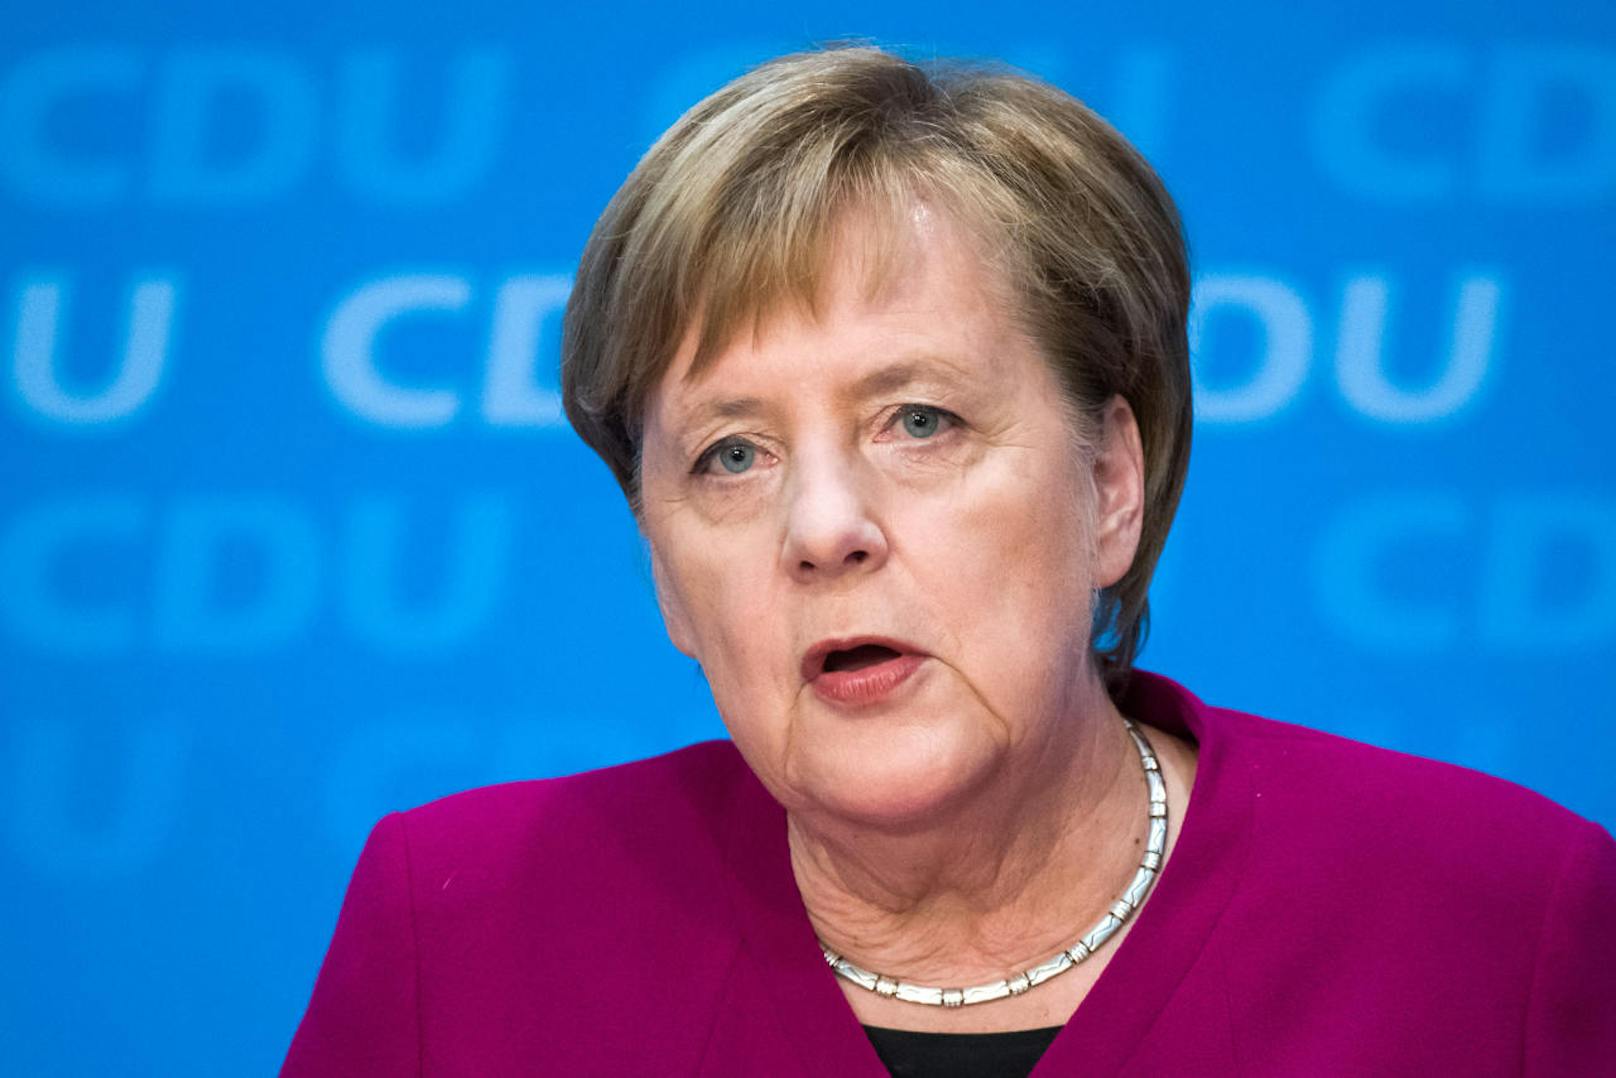 Als Kanzlerin will Merkel bis zum Ende der Legislaturperiode im Amt bleiben. Ihre möglichen Nachfolgekandidaten in der CDU sind: